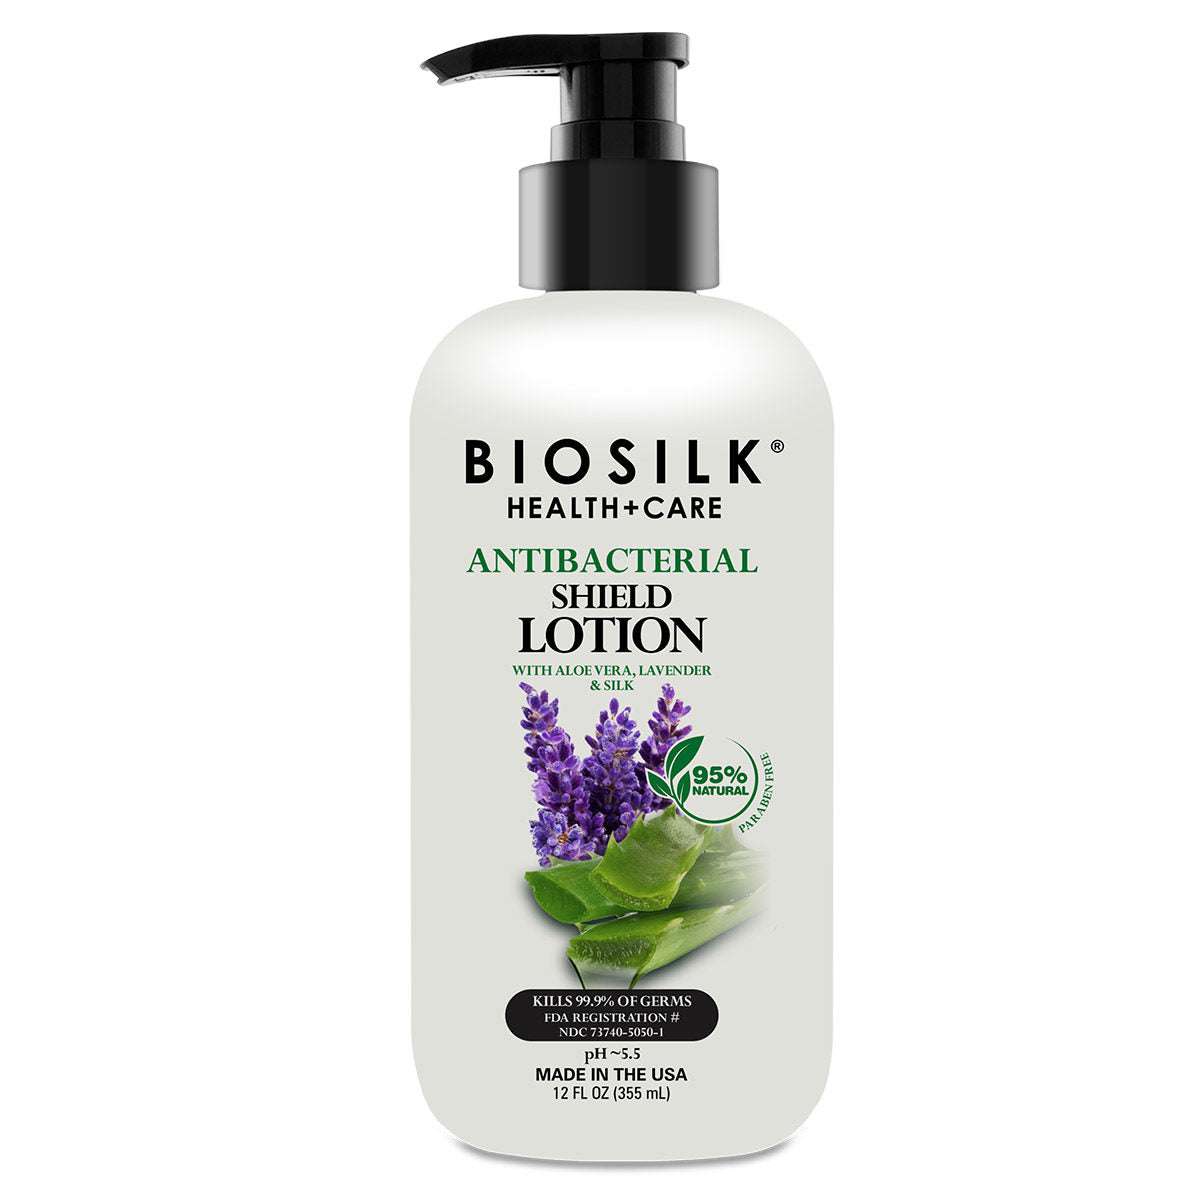 Biosilk Antibacterial & Lotion